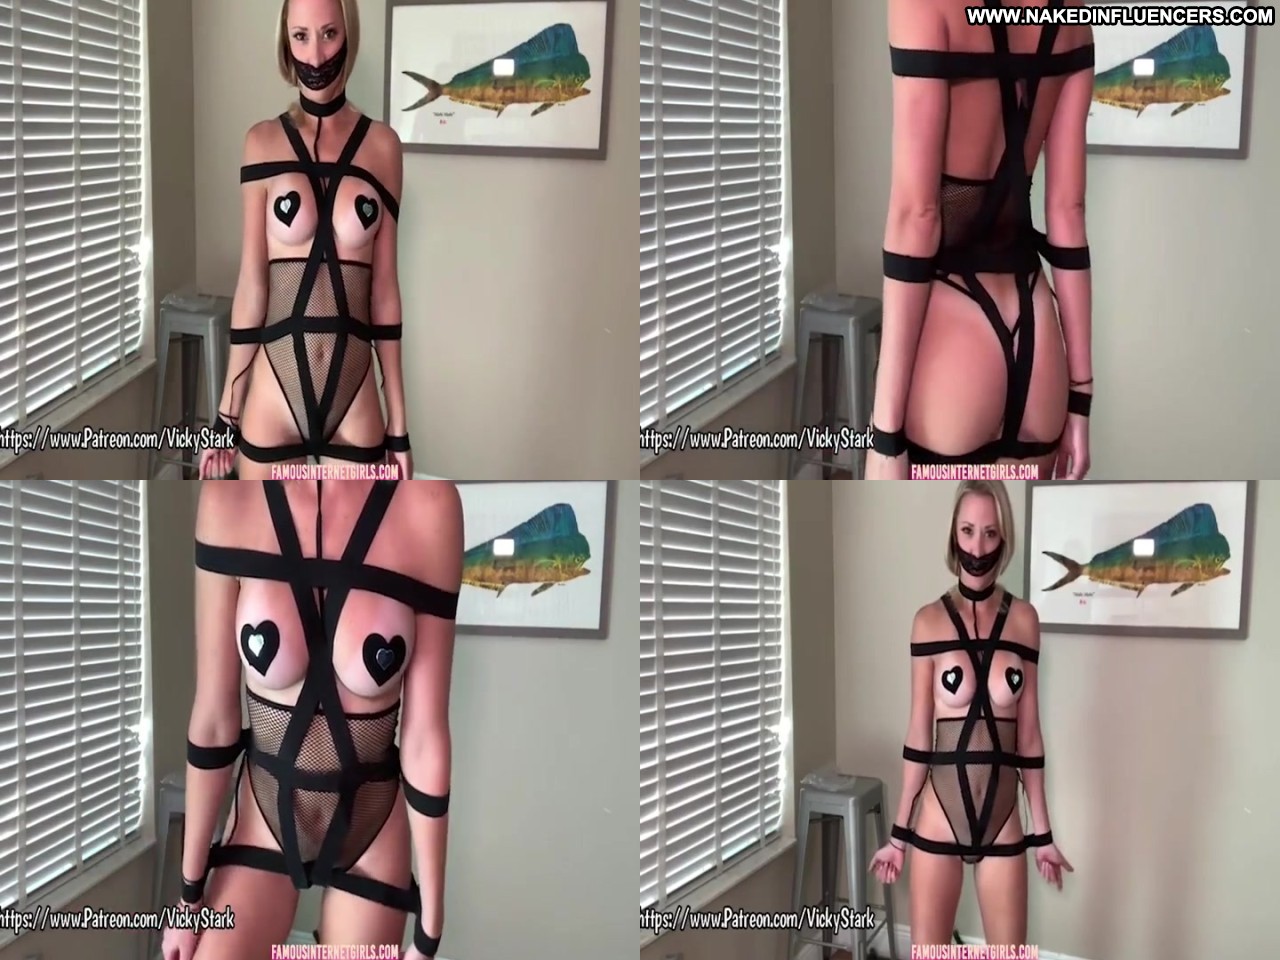 Vicky Stark Nude Bdsmvideo Bdsm Video Hot Bdsm Hot Sex Influencer Porn